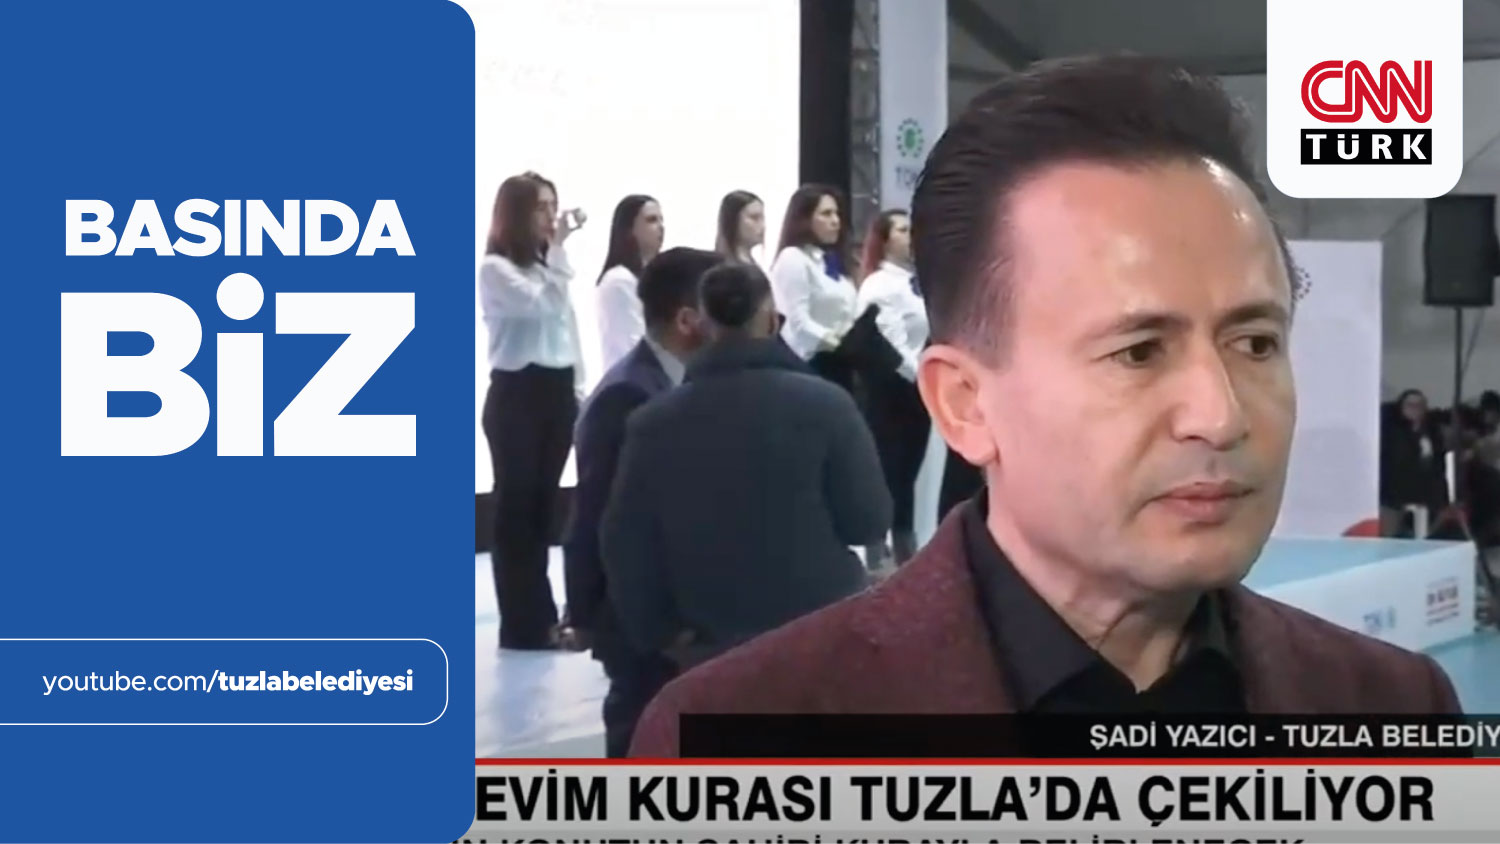 TUZLA'DA 20 BİN 920 KONUT YAPILACAK (CNN TÜRK)